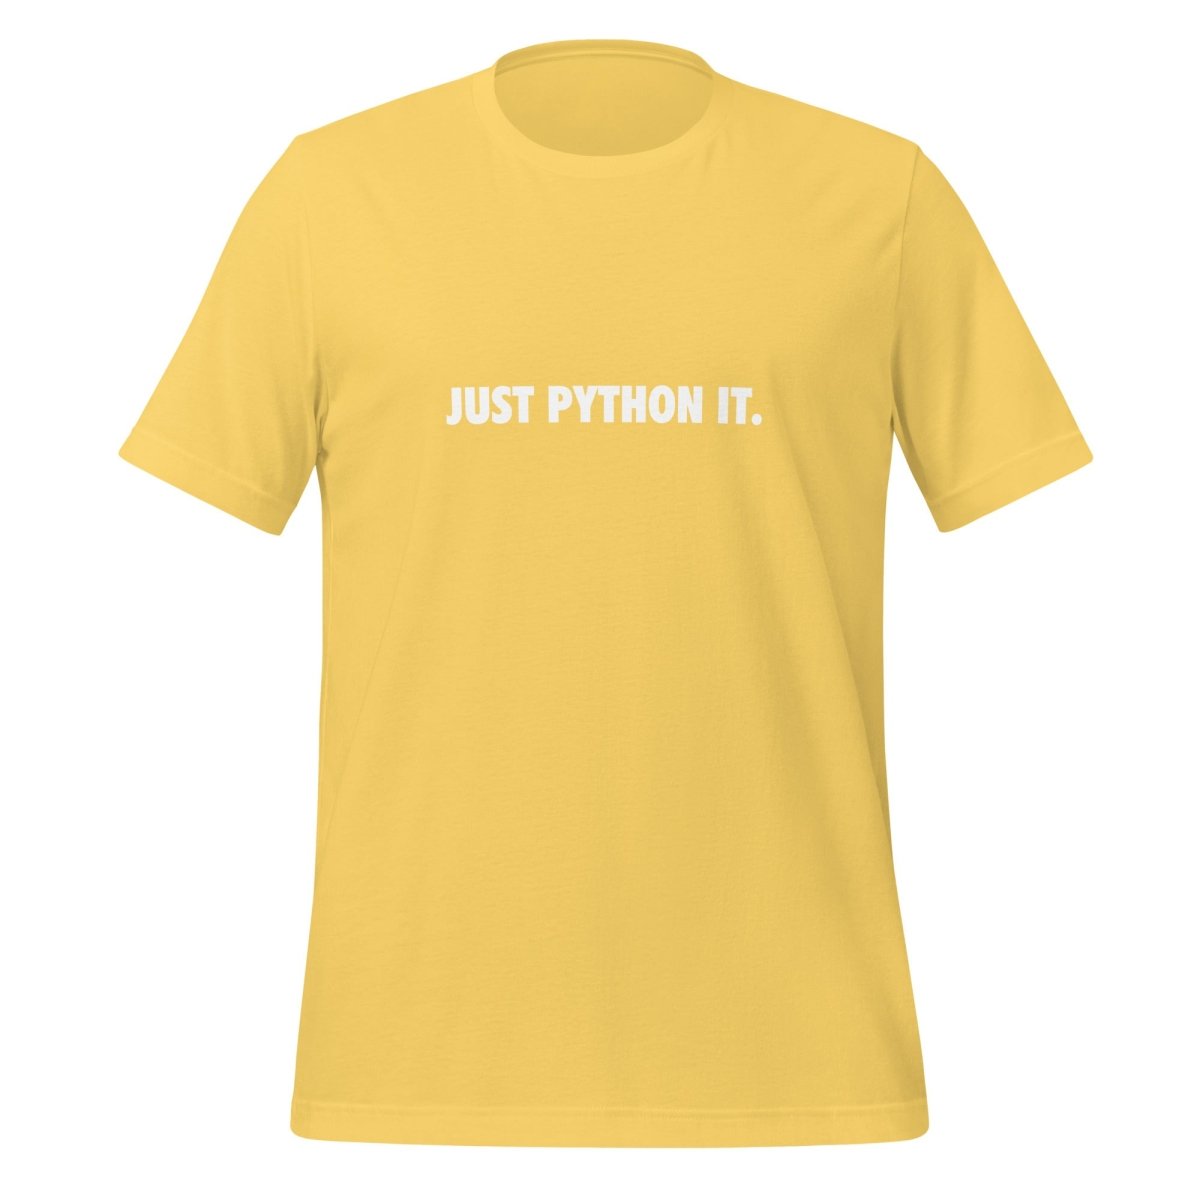 JUST PYTHON IT. T - Shirt (unisex) - Yellow - AI Store